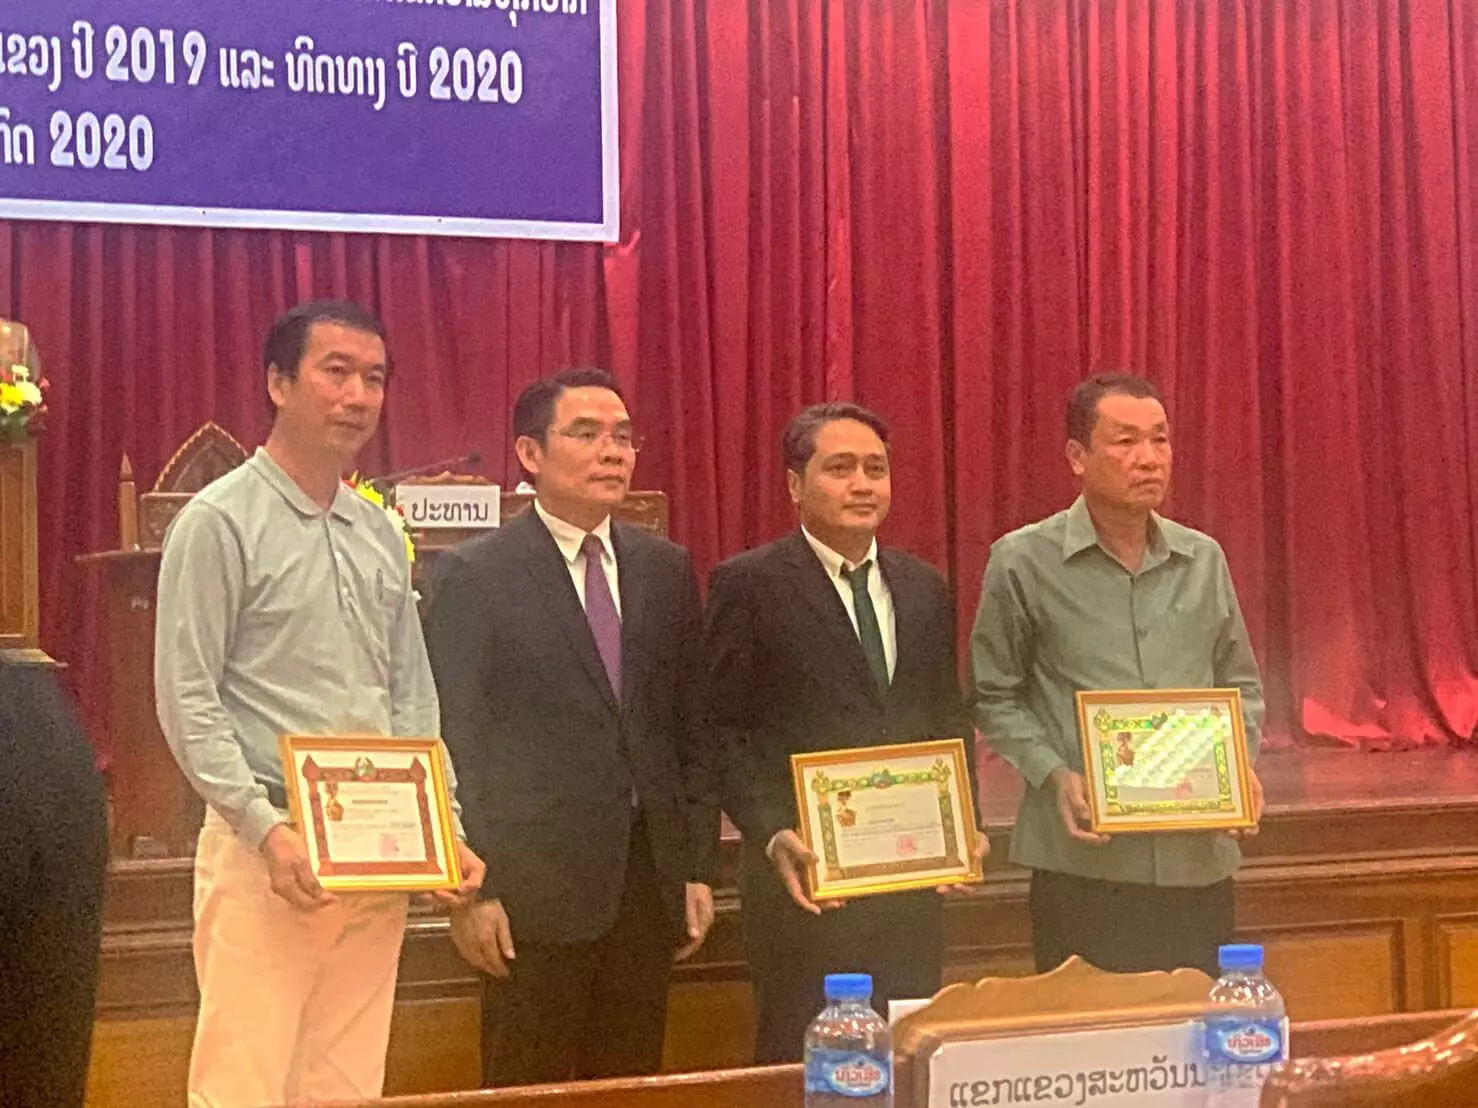 慈濟基金會獲頒「寮國國家獎」，表揚慈濟對該國人民的慈善援助，由占巴塞省（Champasak）省長代表總理頒予。